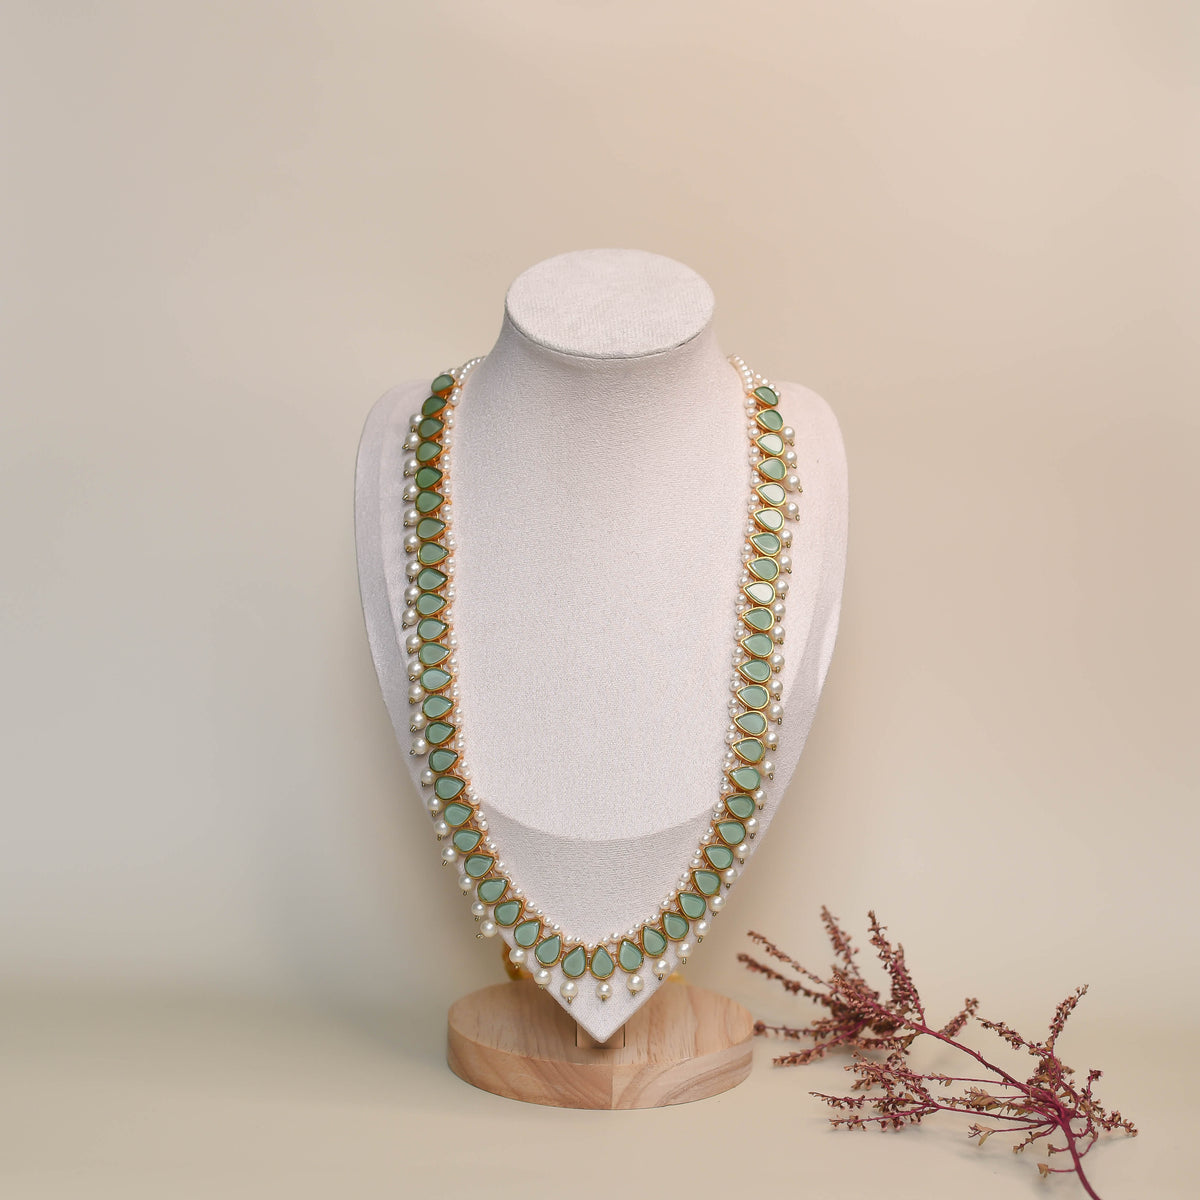 Neha Maala Necklace - Mint Green